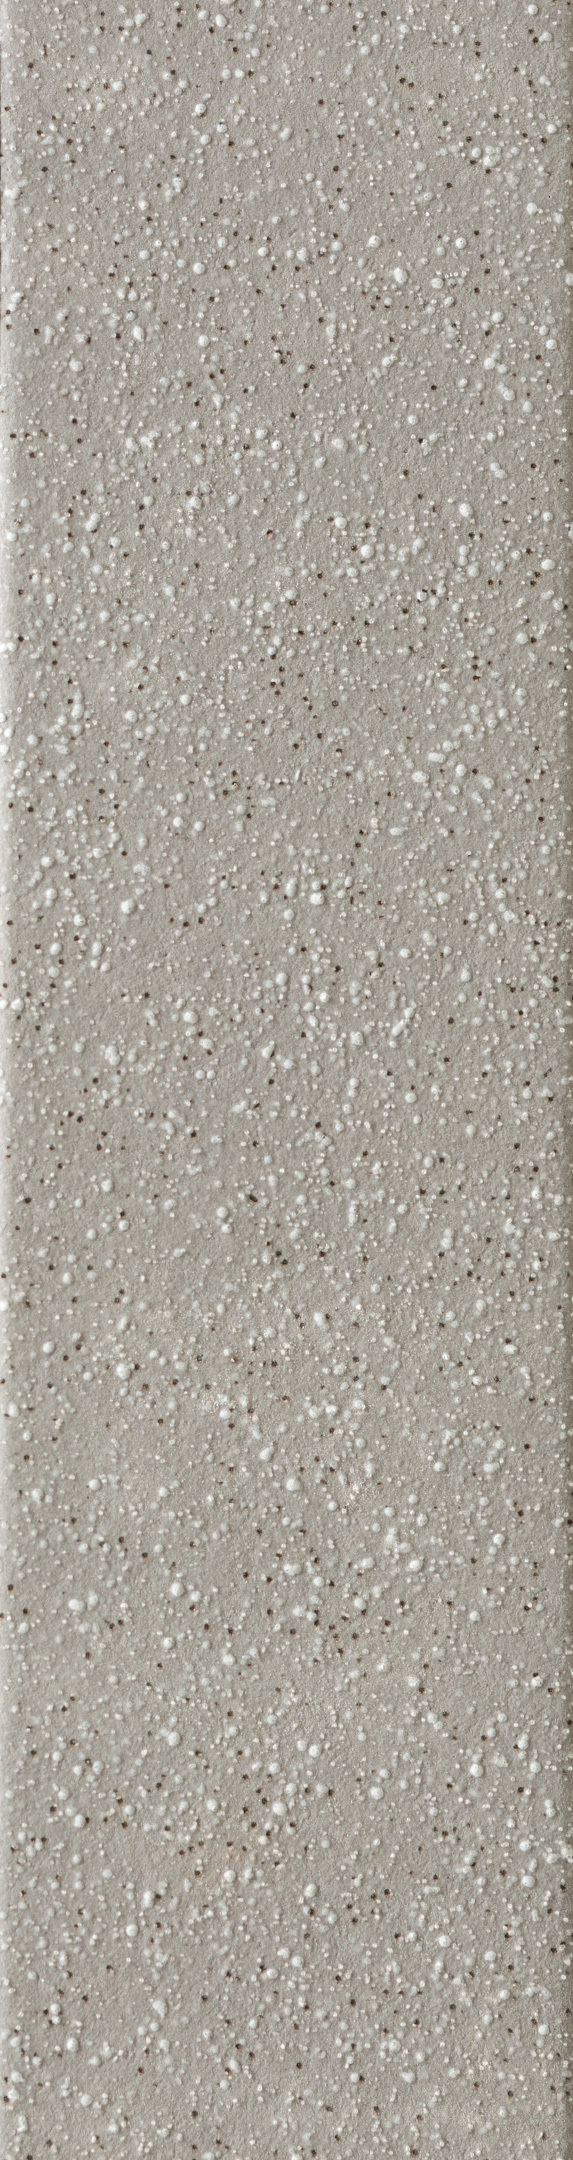 Клинкерная плитка Керамин Мичиган 1 серая 245х65х7 мм (34 шт.=0,54 кв.м)